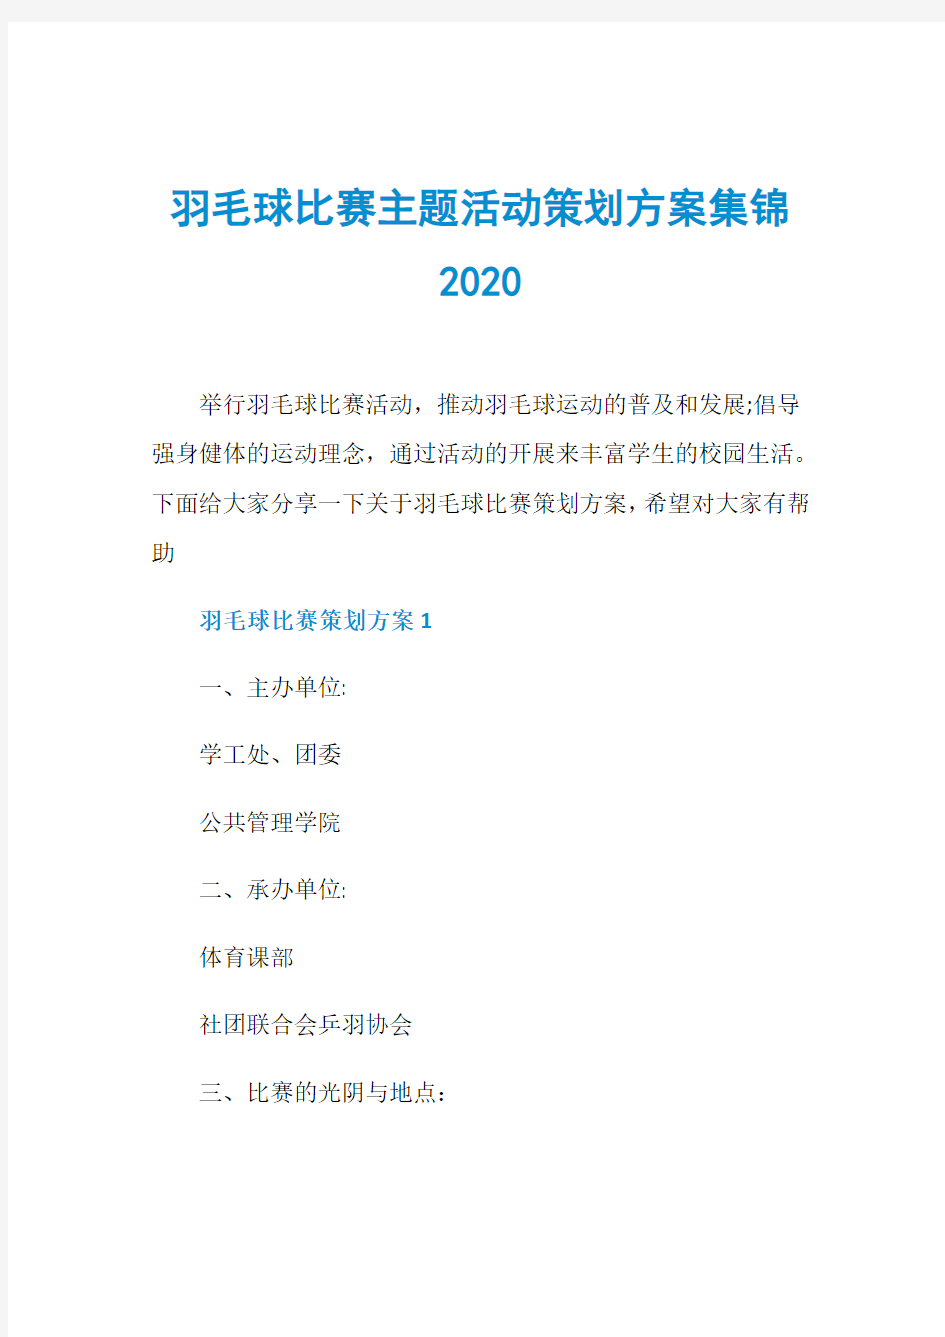 羽毛球比赛主题活动策划方案集锦2020